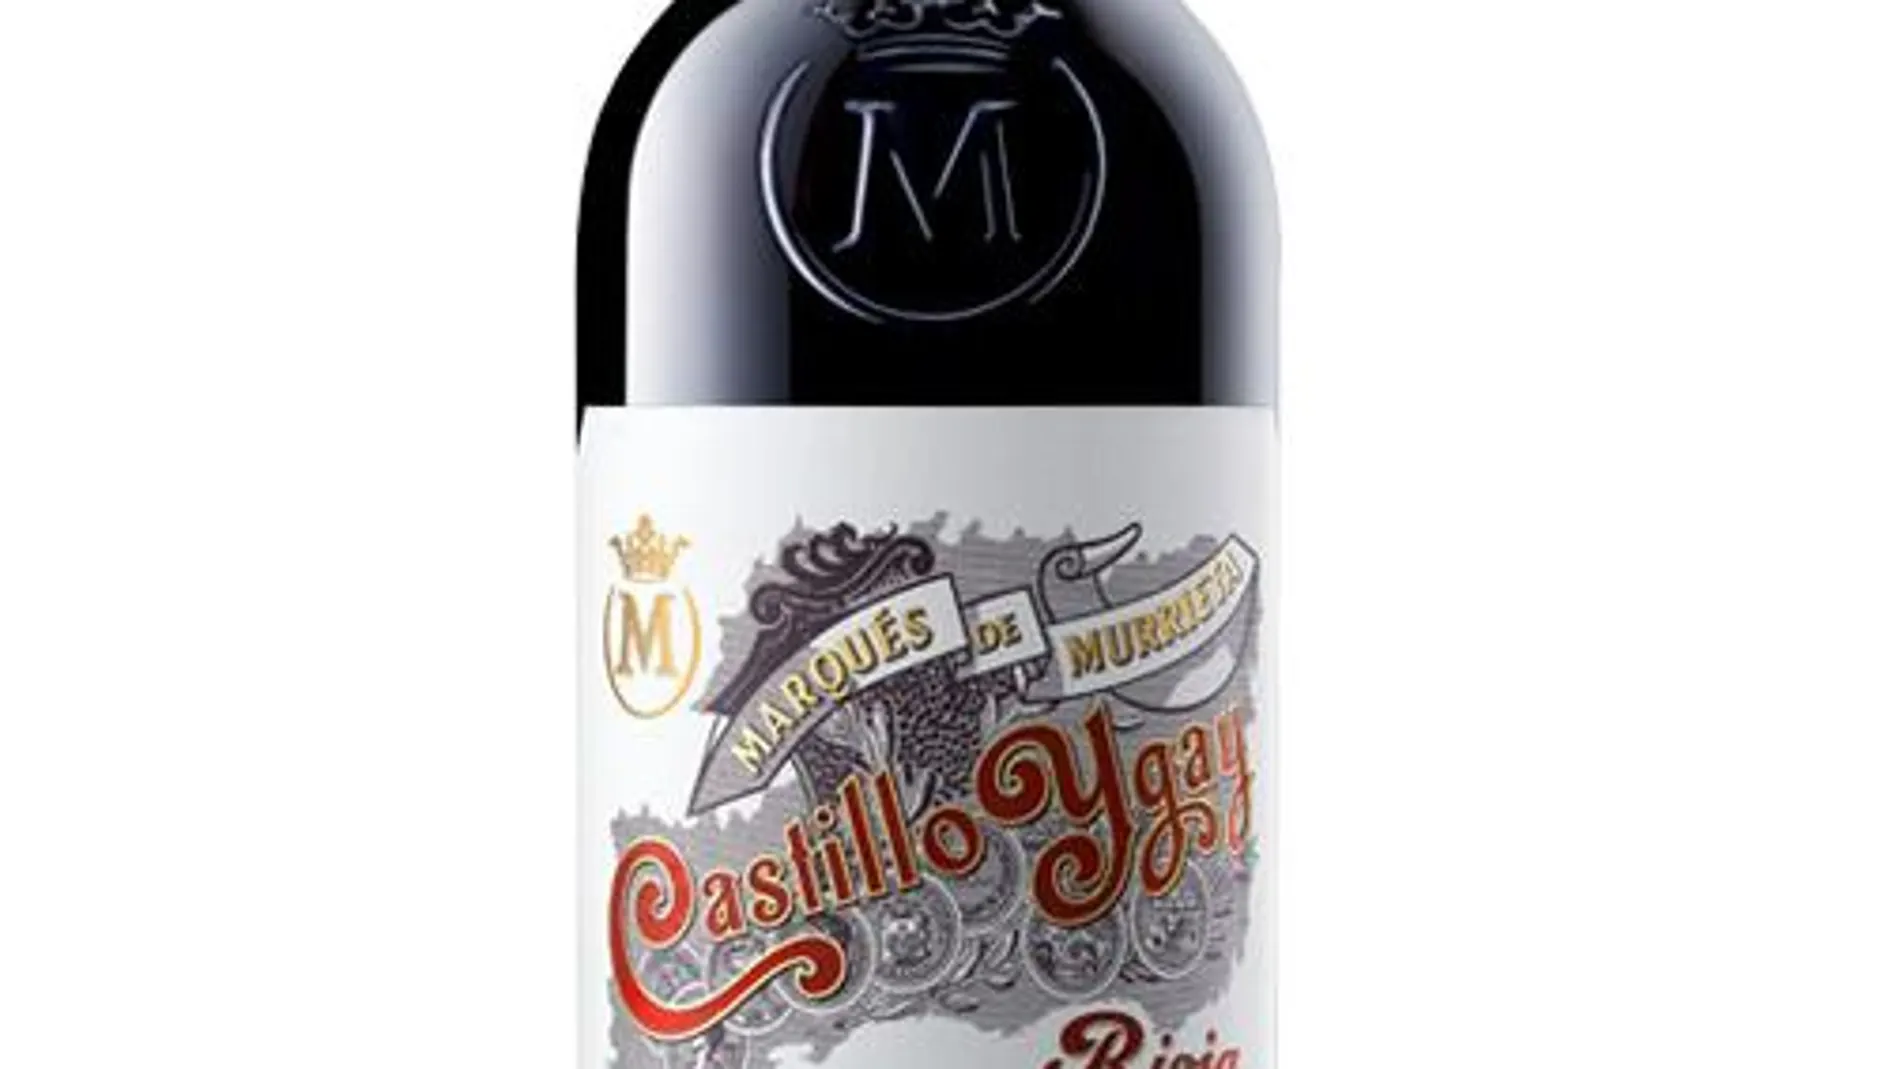 Botella de vino Castillo Ygay Gran Reserva Especial 2010, premiado como el mejor del mundo